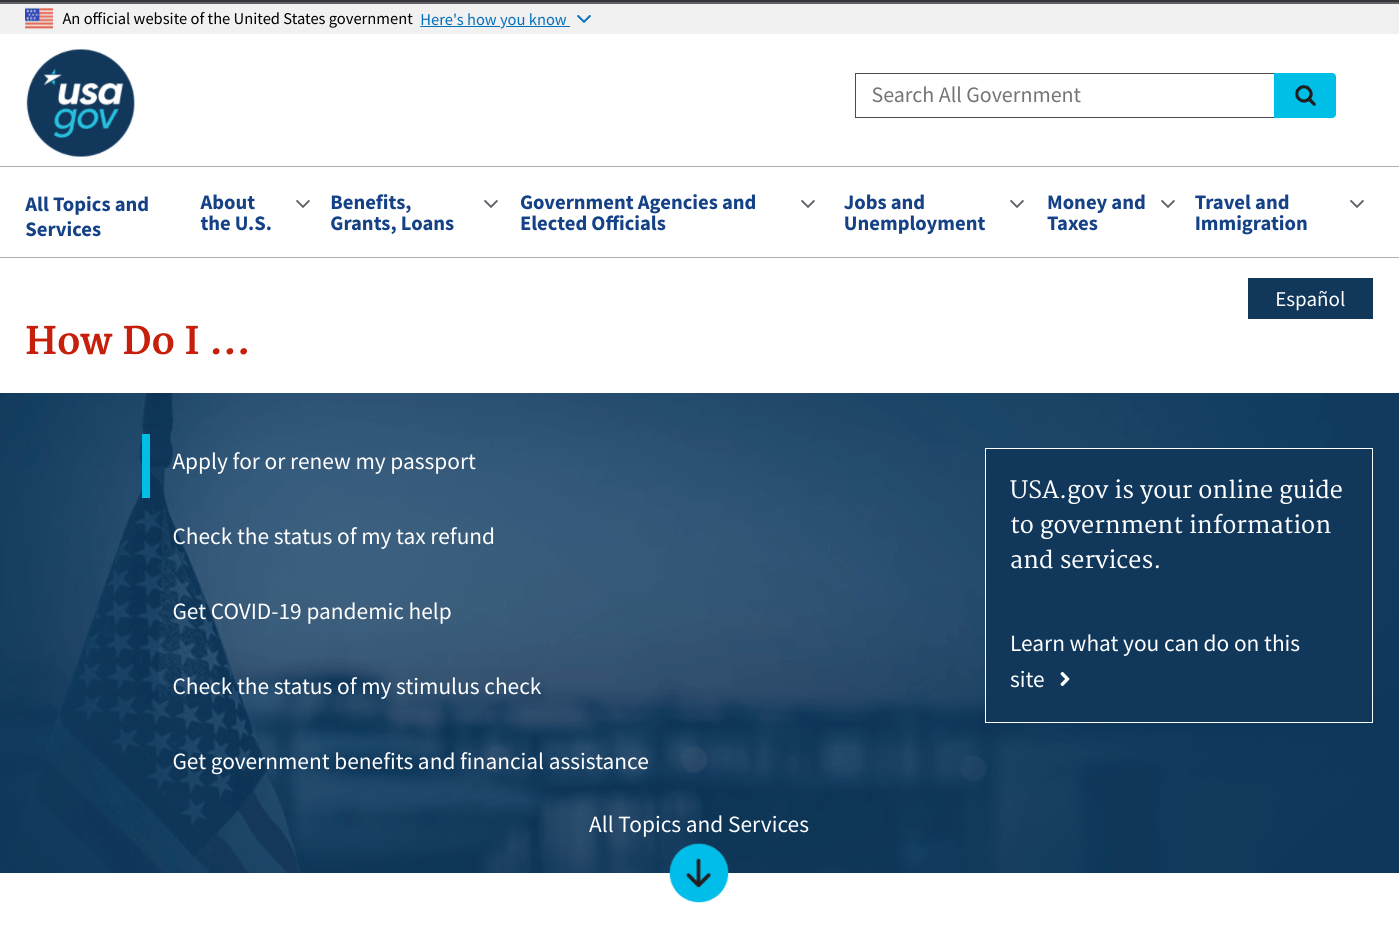 USA.gov Website